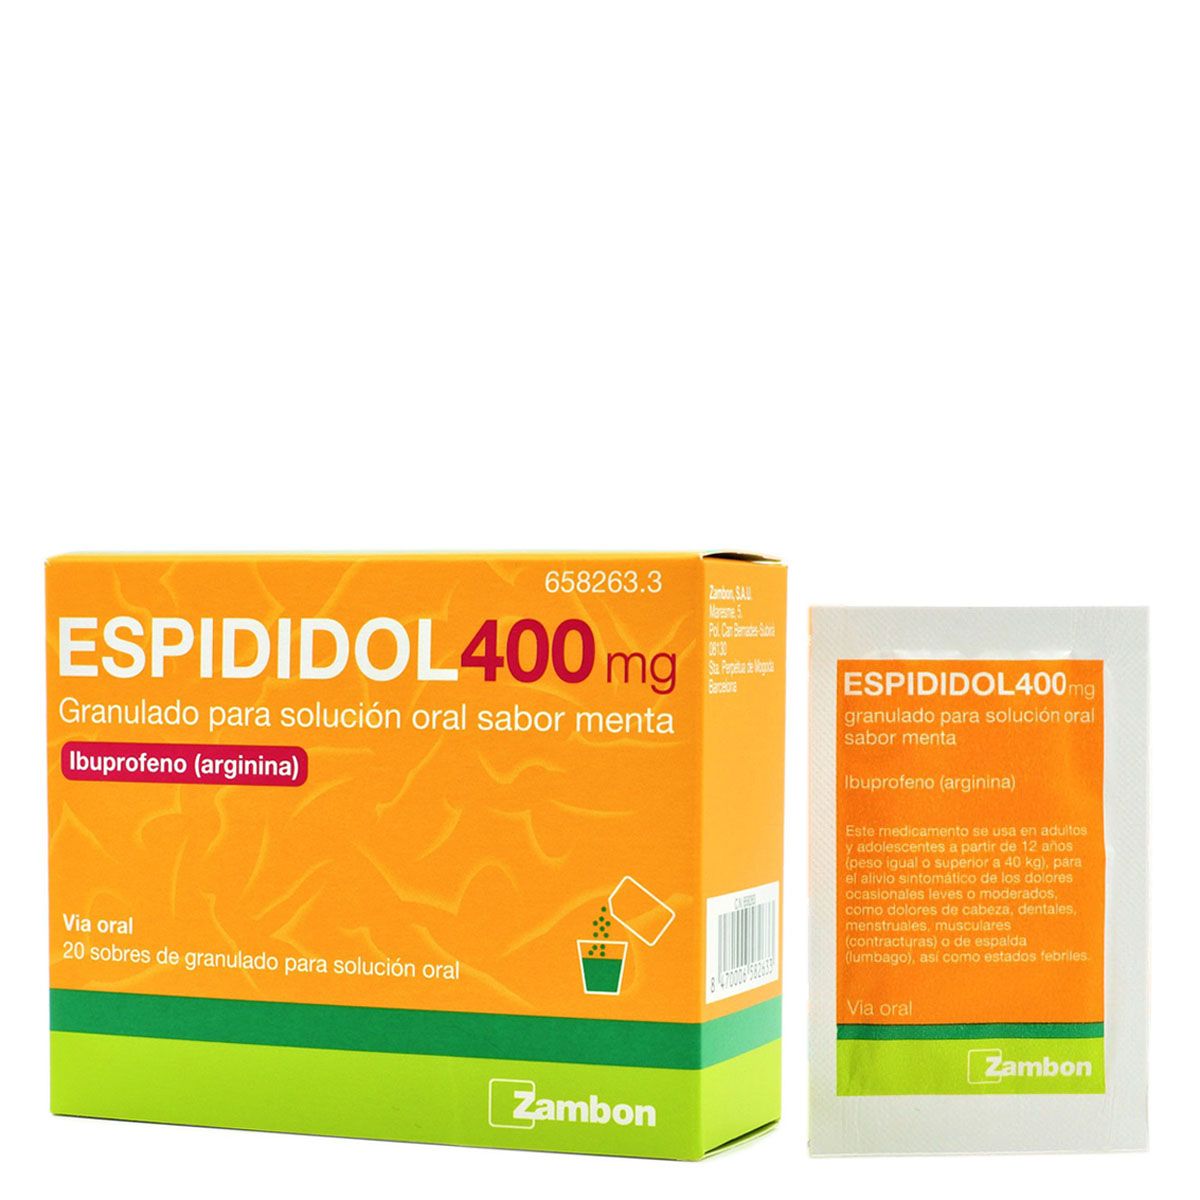 Espididol 400 mg 20 Sobres Granulado Para Solución Oral Sabor Menta  Ibuprofeno arginina| FarmaSoler